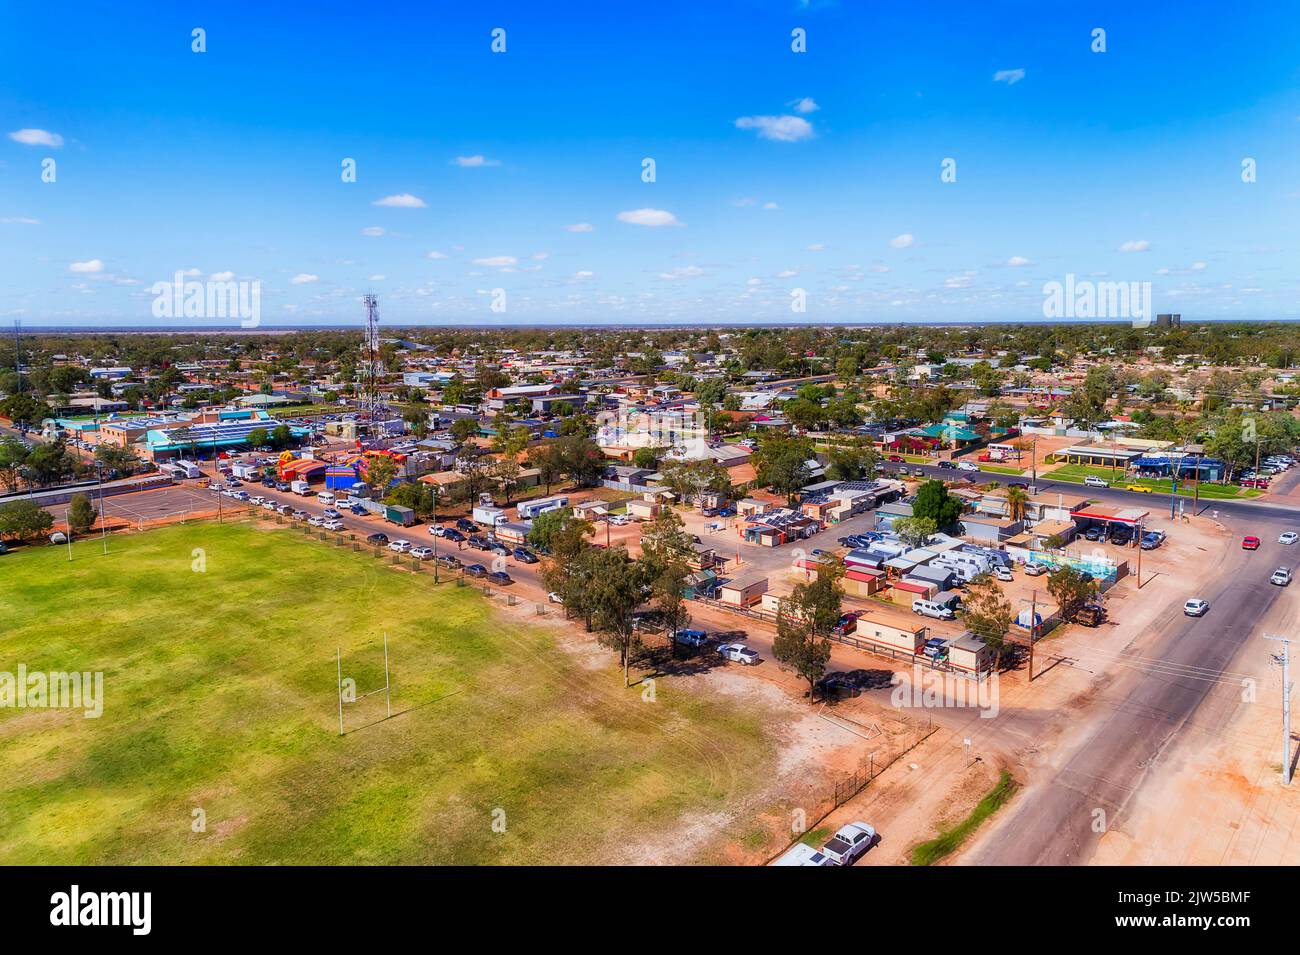 Downtown of Lightning Ridge Opal Mining Town im ländlichen regionalen Outback von NSW, Australien - Luftaufnahme der Stadt. Stockfoto